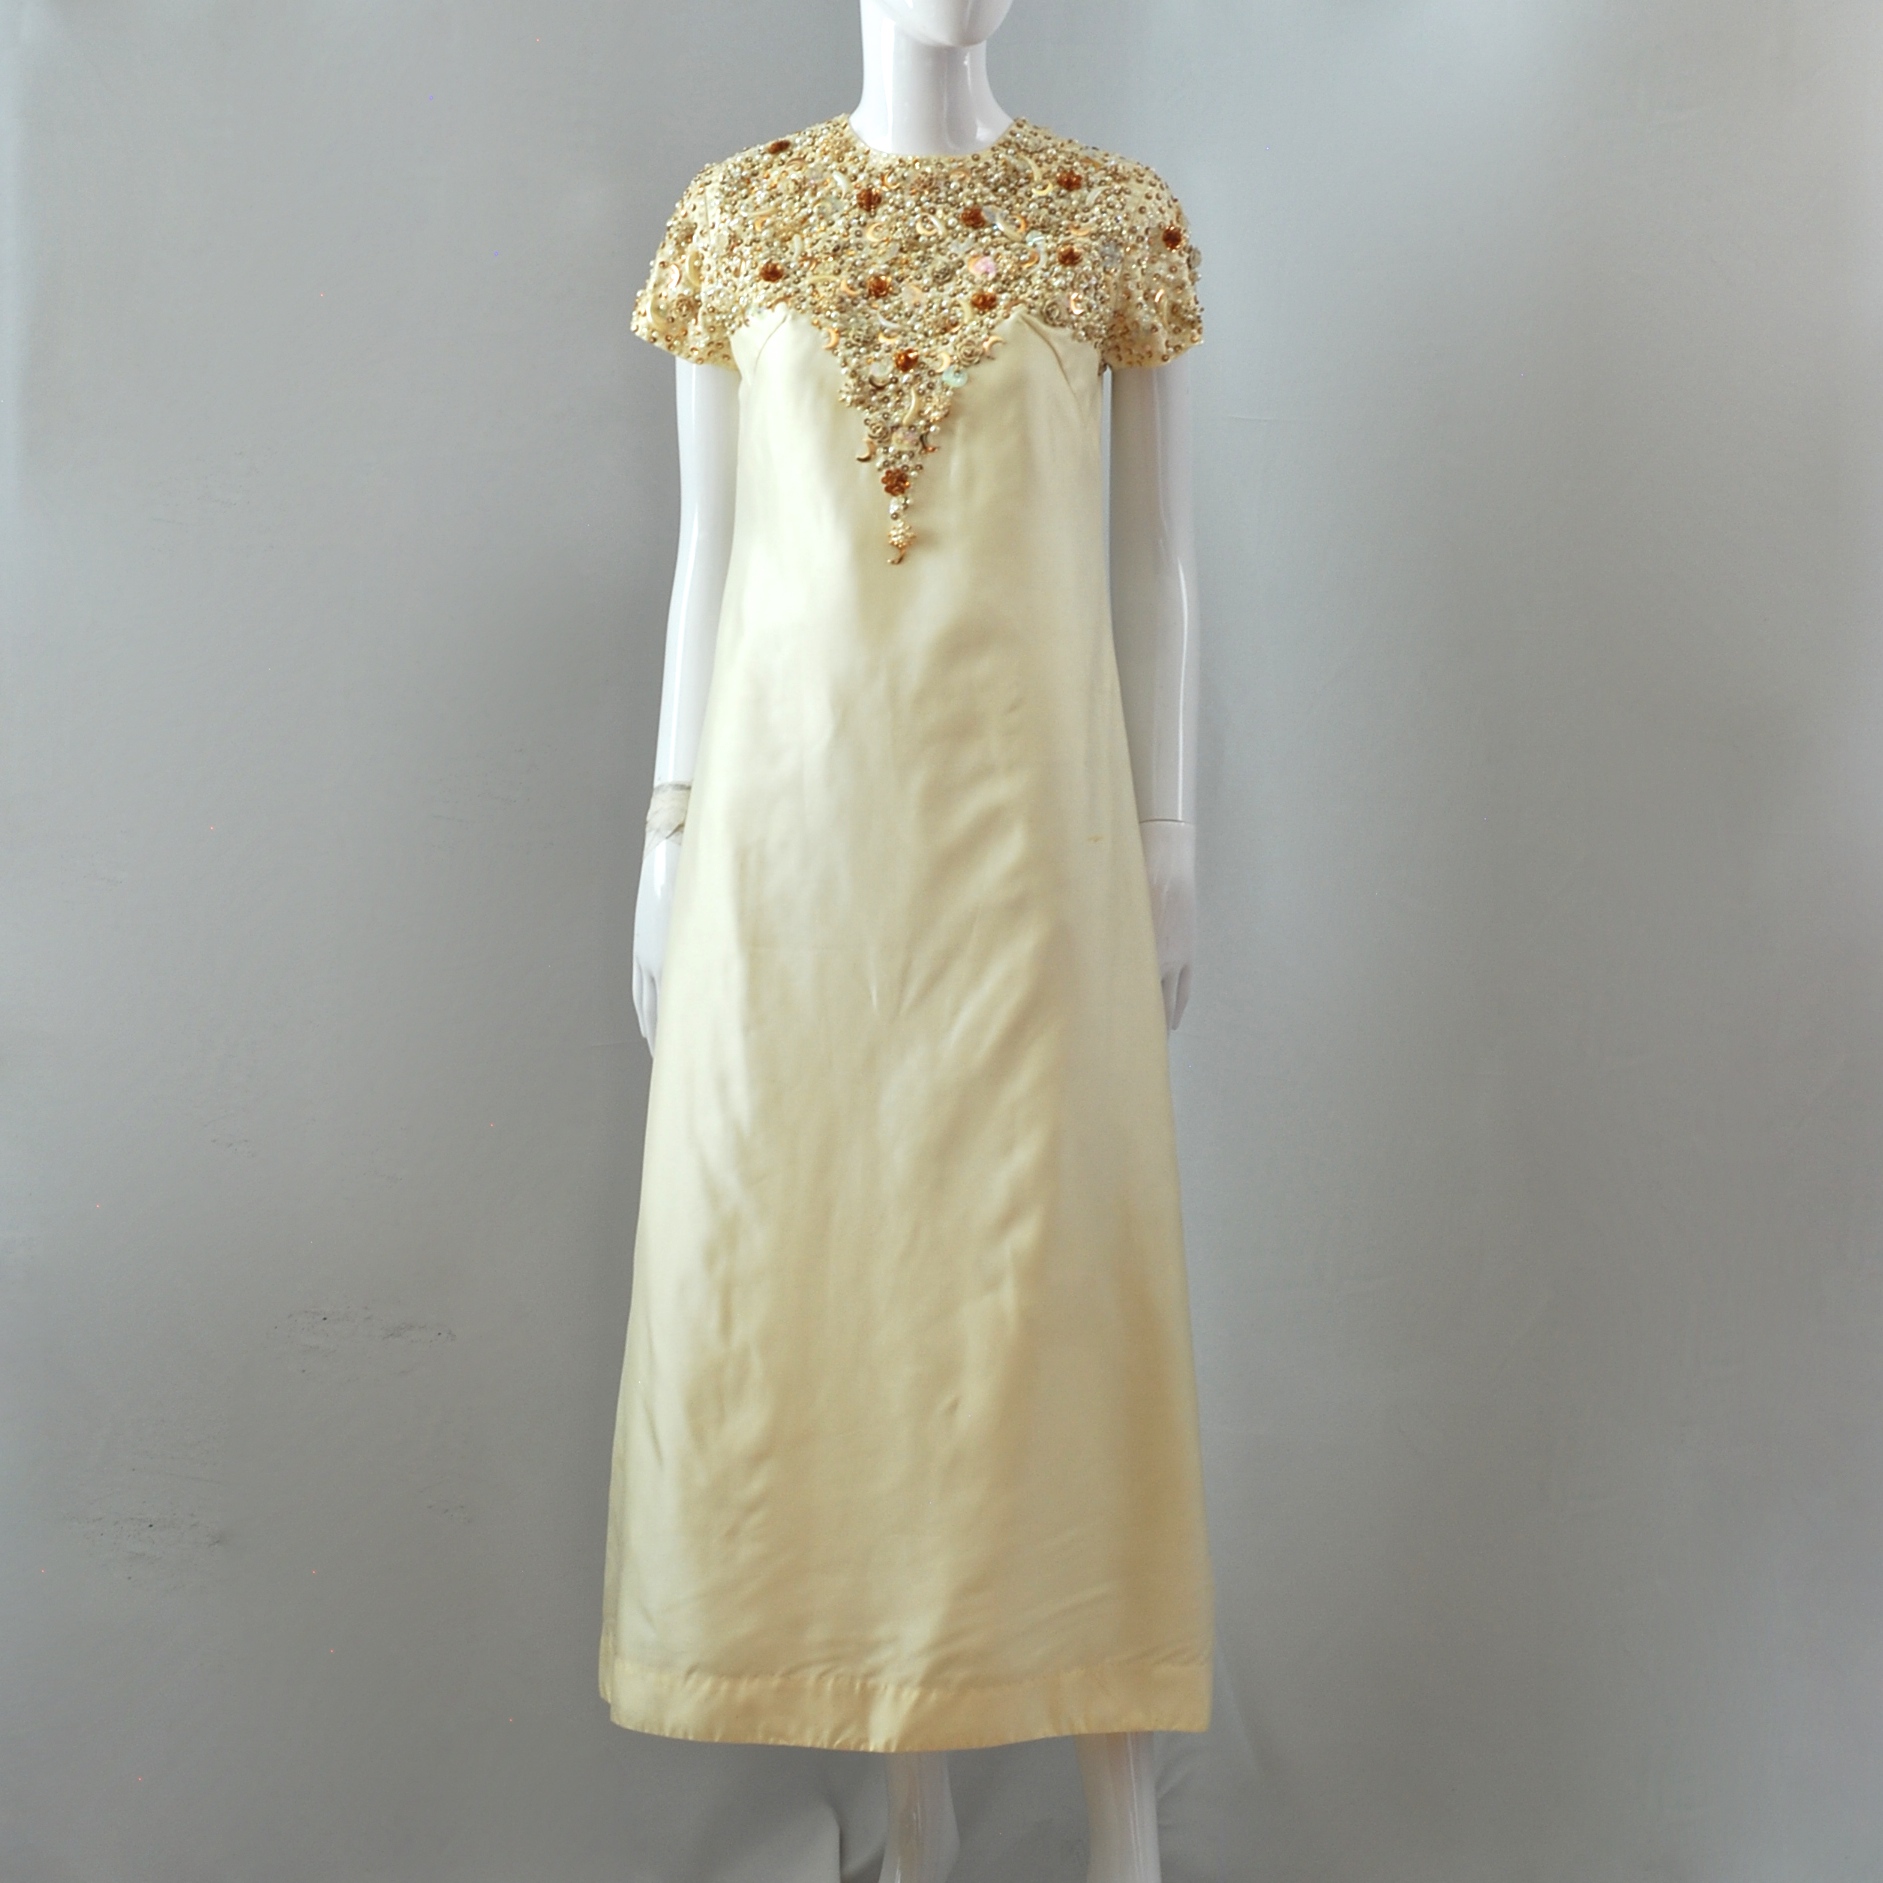 lemon chiffon dress